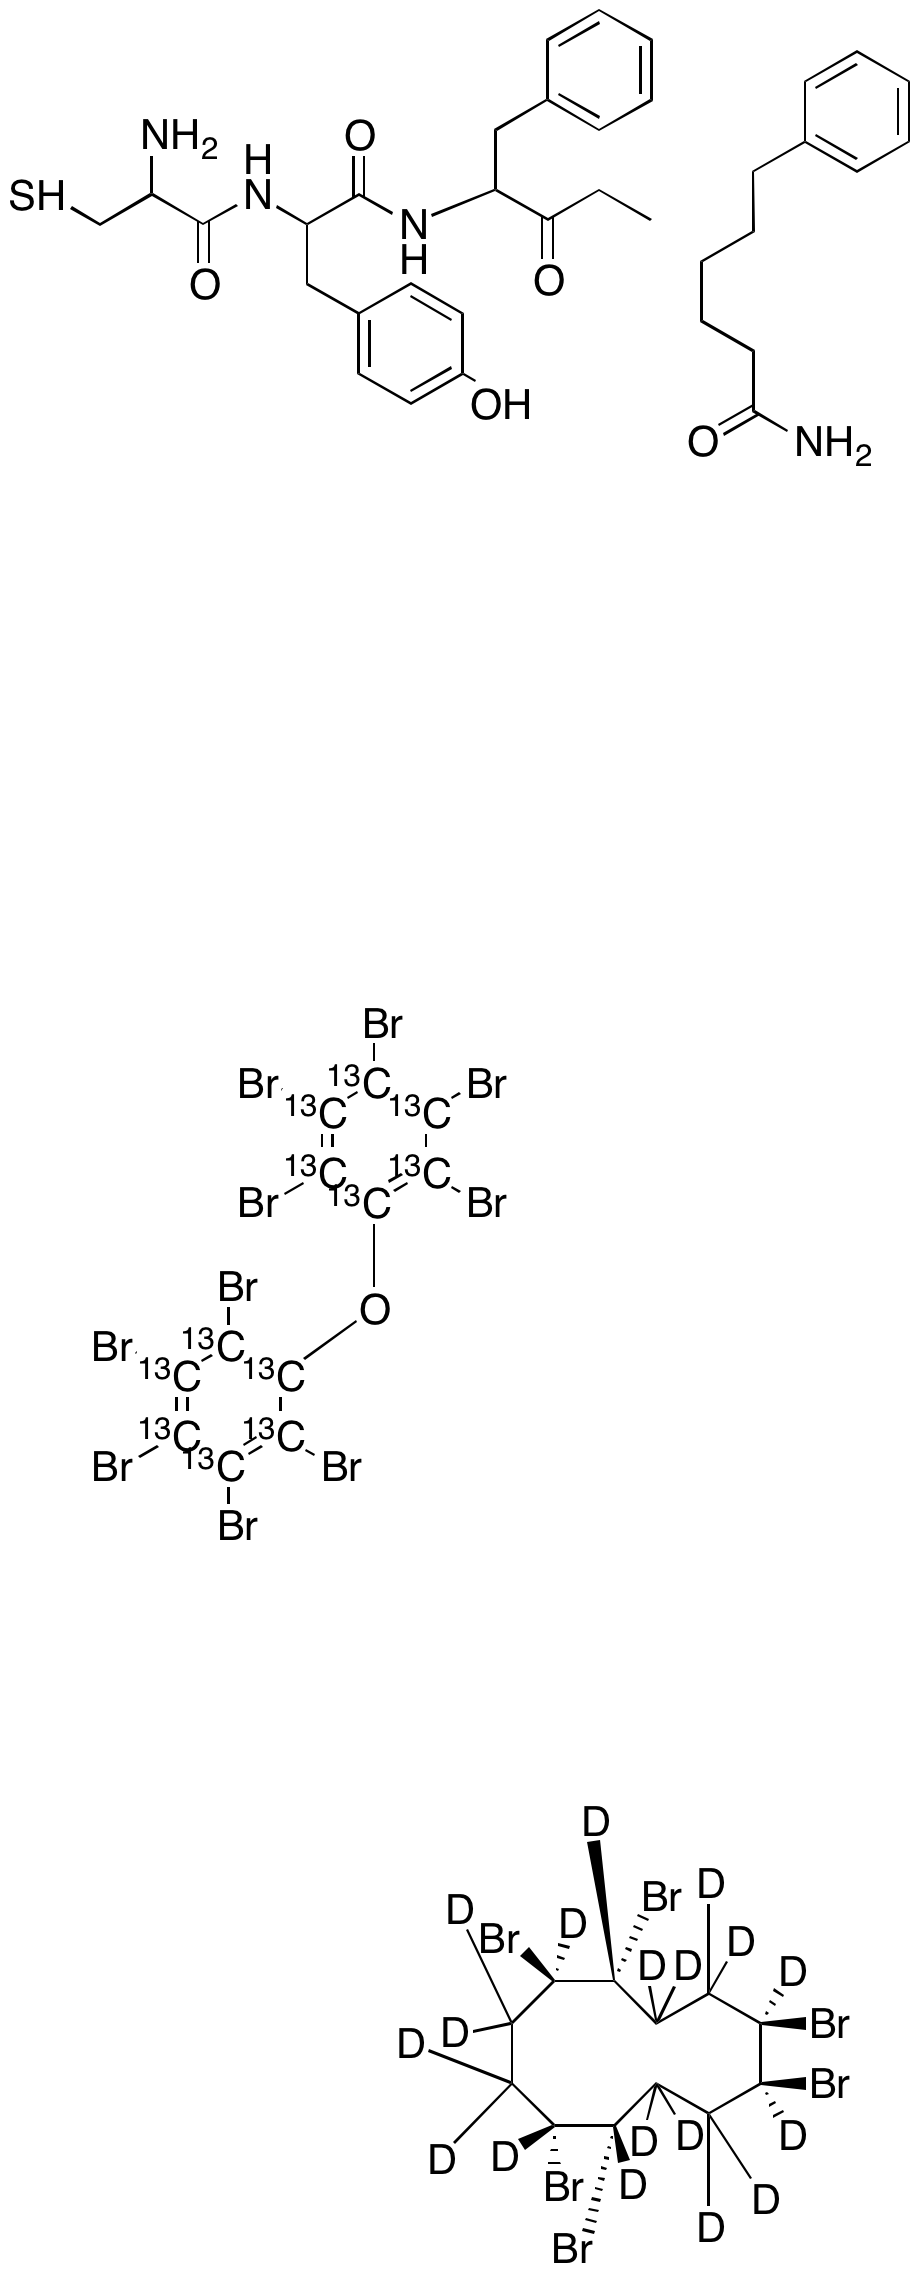 rel-?-Hexabromocyclododecane-D18